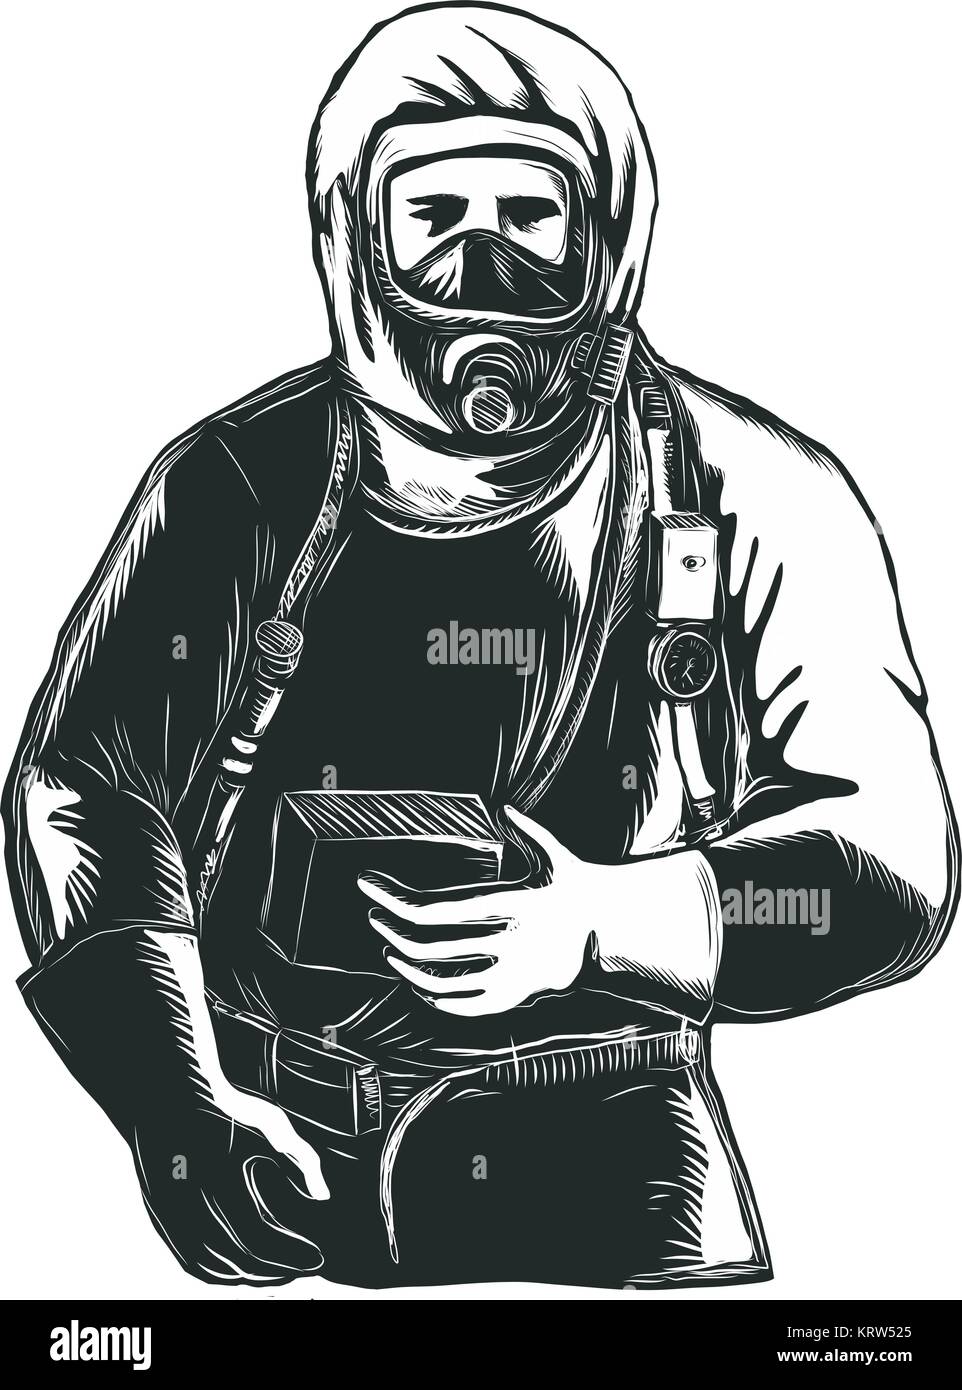 Stile Scratchboard illustrazione di un EMT,emergenza tecnico medico, pompiere, personale paramedico, ricercatore, Lavoratore che indossa Hazmat Suit fatto su raschiare Illustrazione Vettoriale